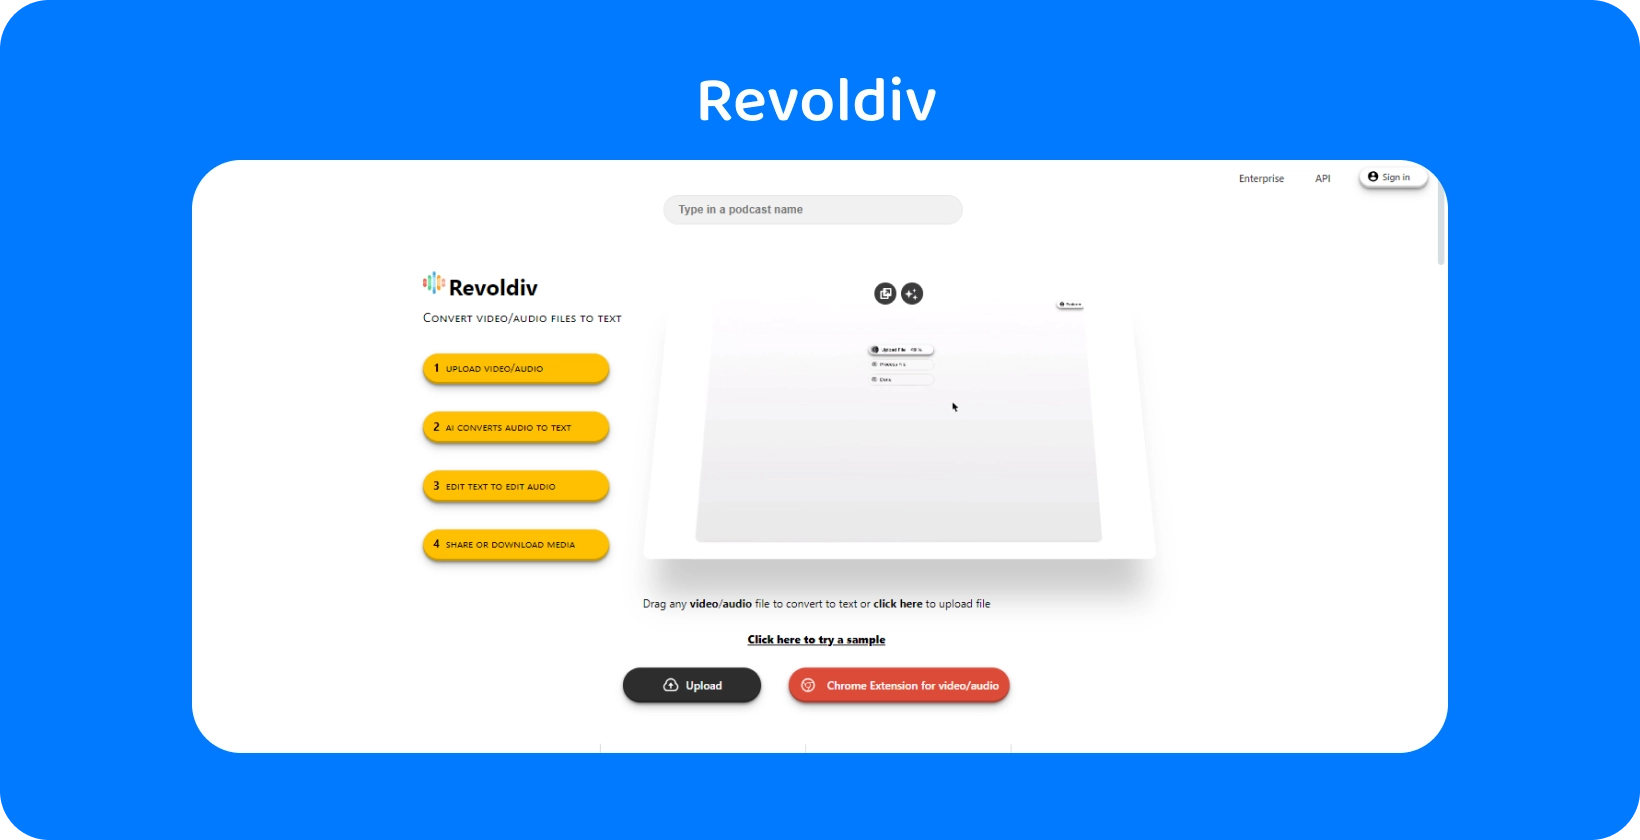 Giao diện web kiểu dáng đẹp của Revoldiv đã sẵn sàng để tải lên âm thanh và chuyển đổi thành văn bản, thể hiện sự đơn giản và hiệu quả.